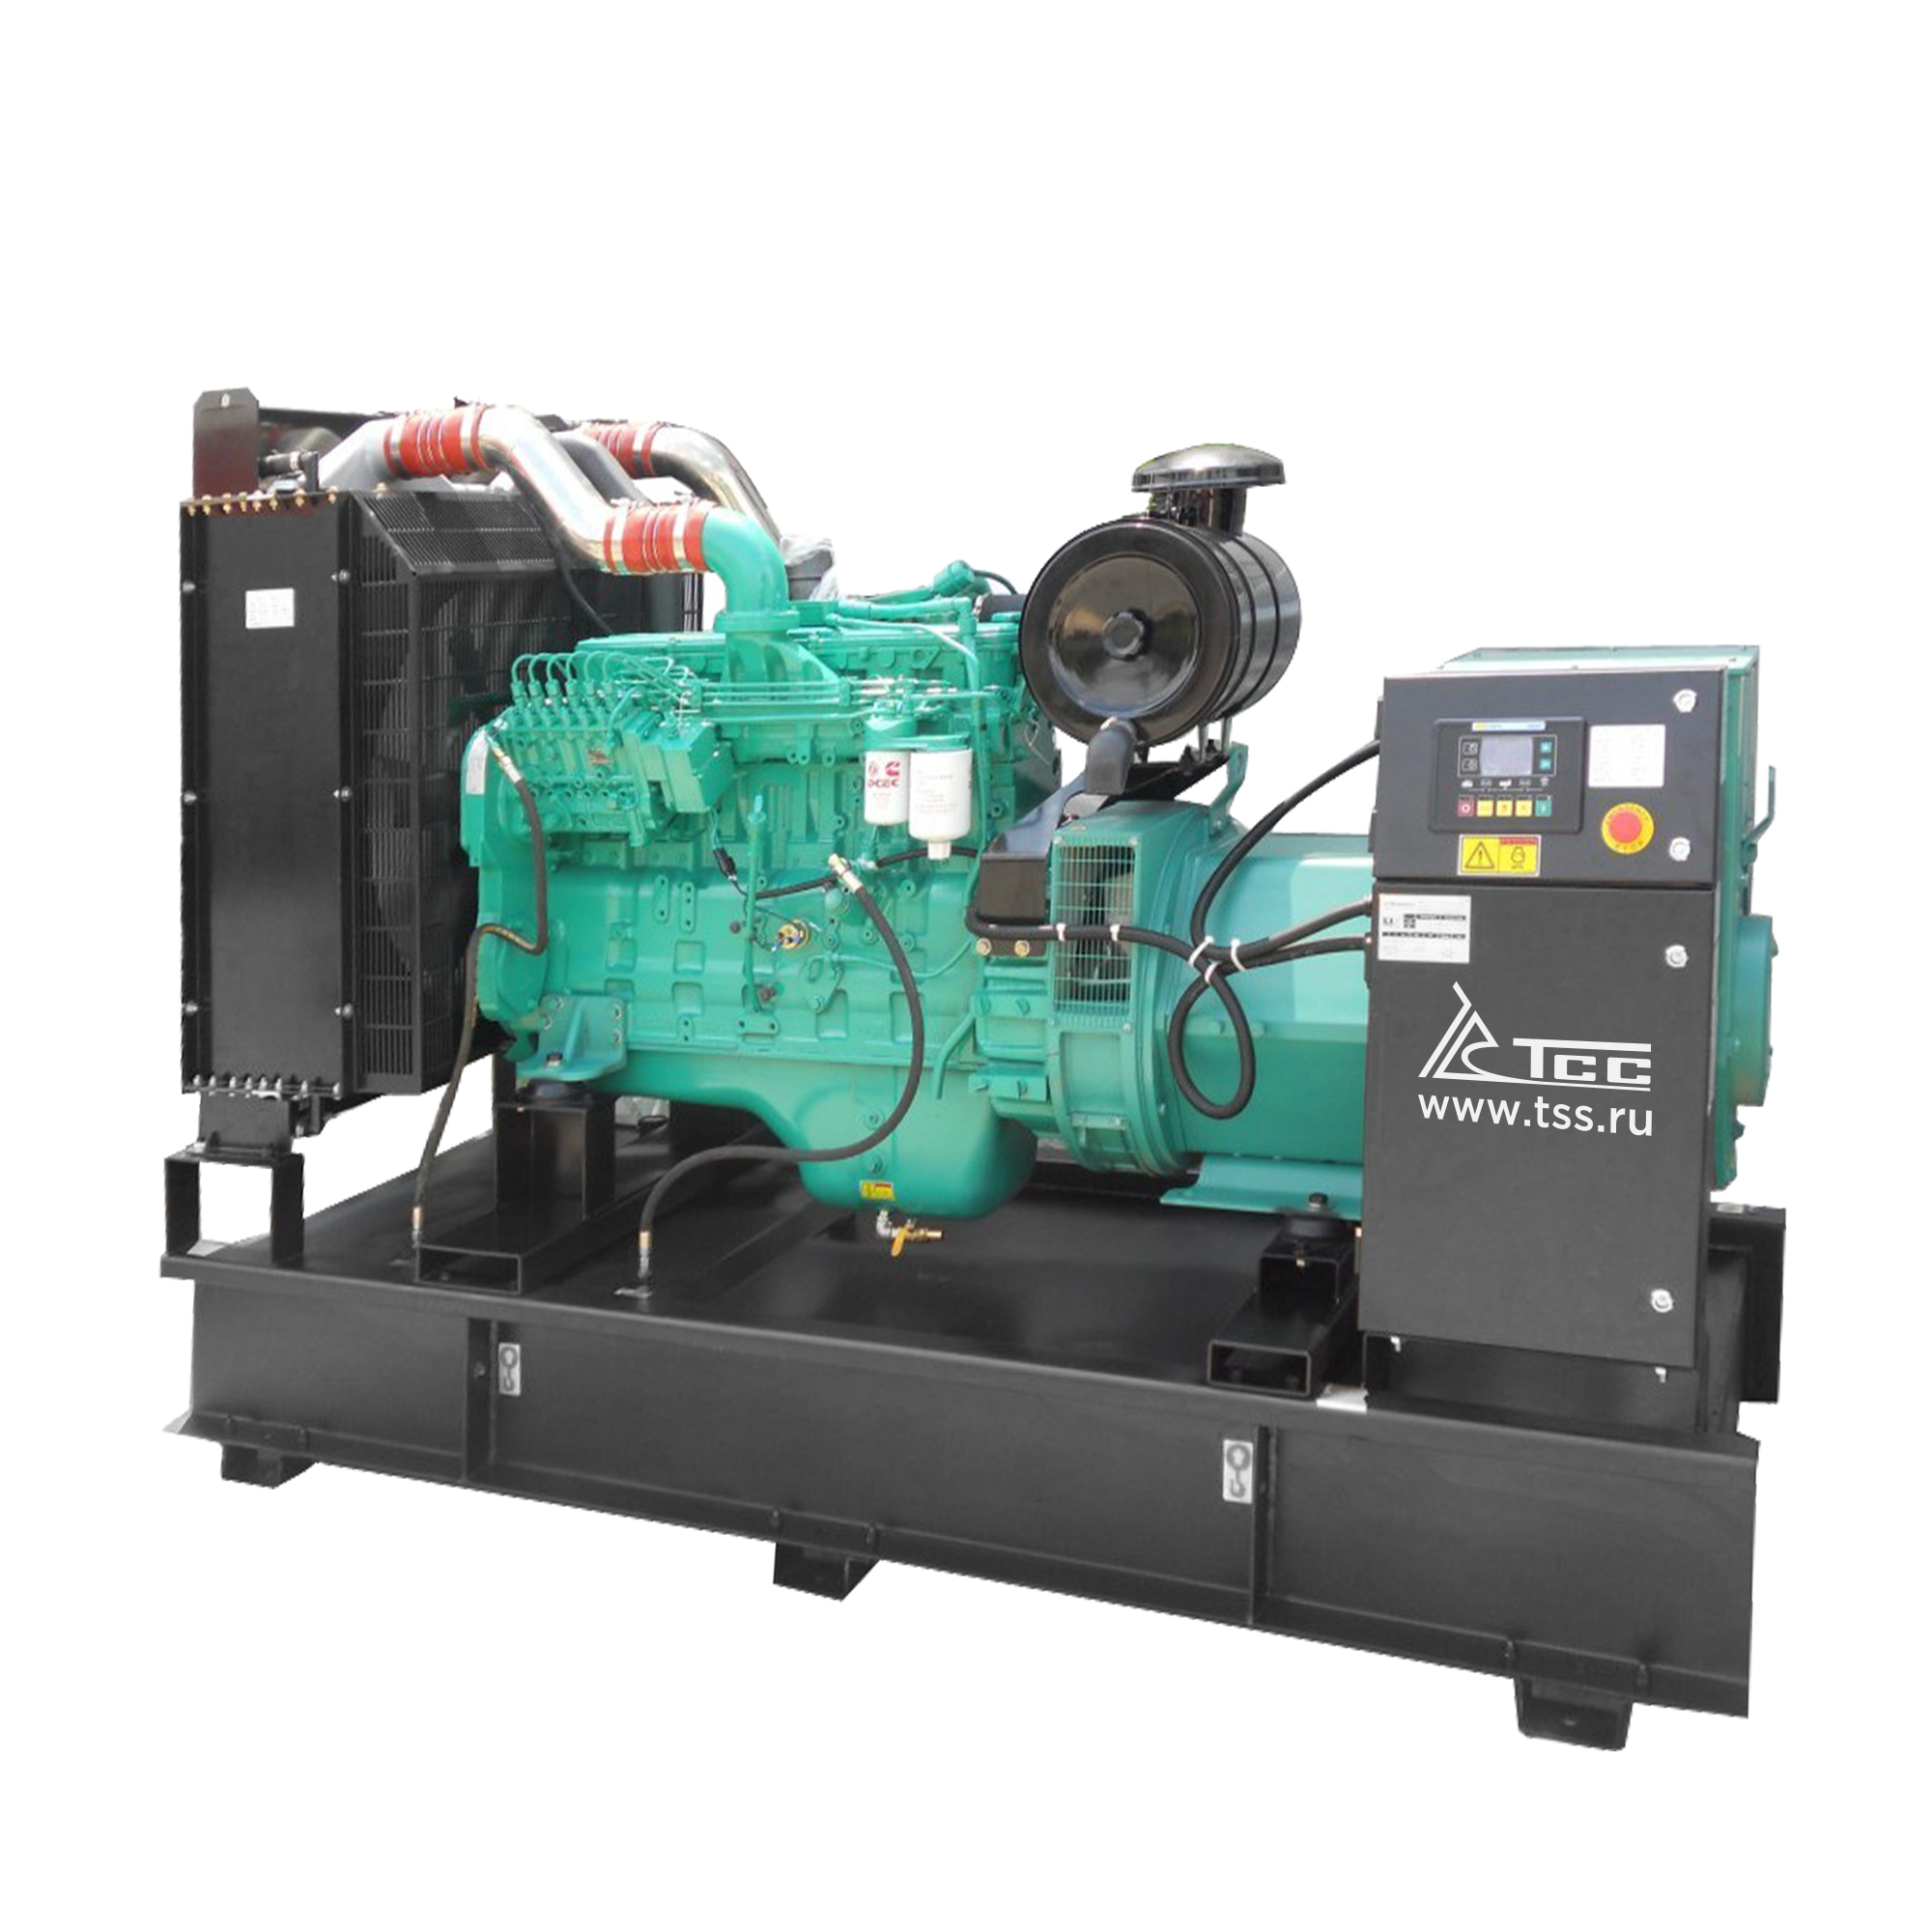 Дизельный генератор ТСС АД-32C-Т400-1РМ15 дизельный генератор тсс ад 1800с т400 1рм15